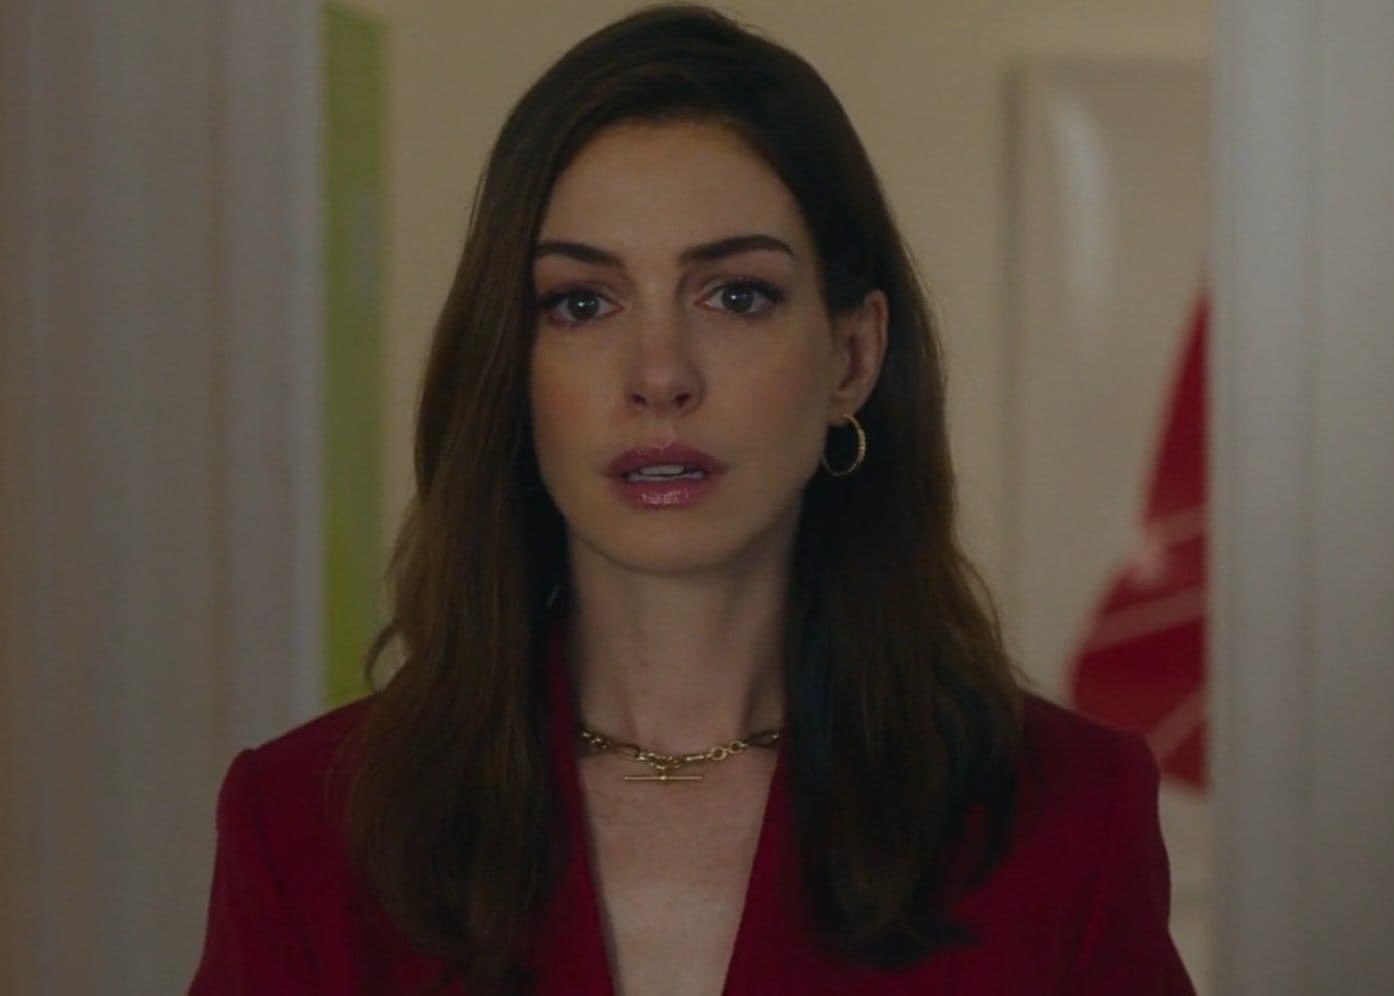 Anne Hathaway con traje rojo y collar, expresión seria, en interior